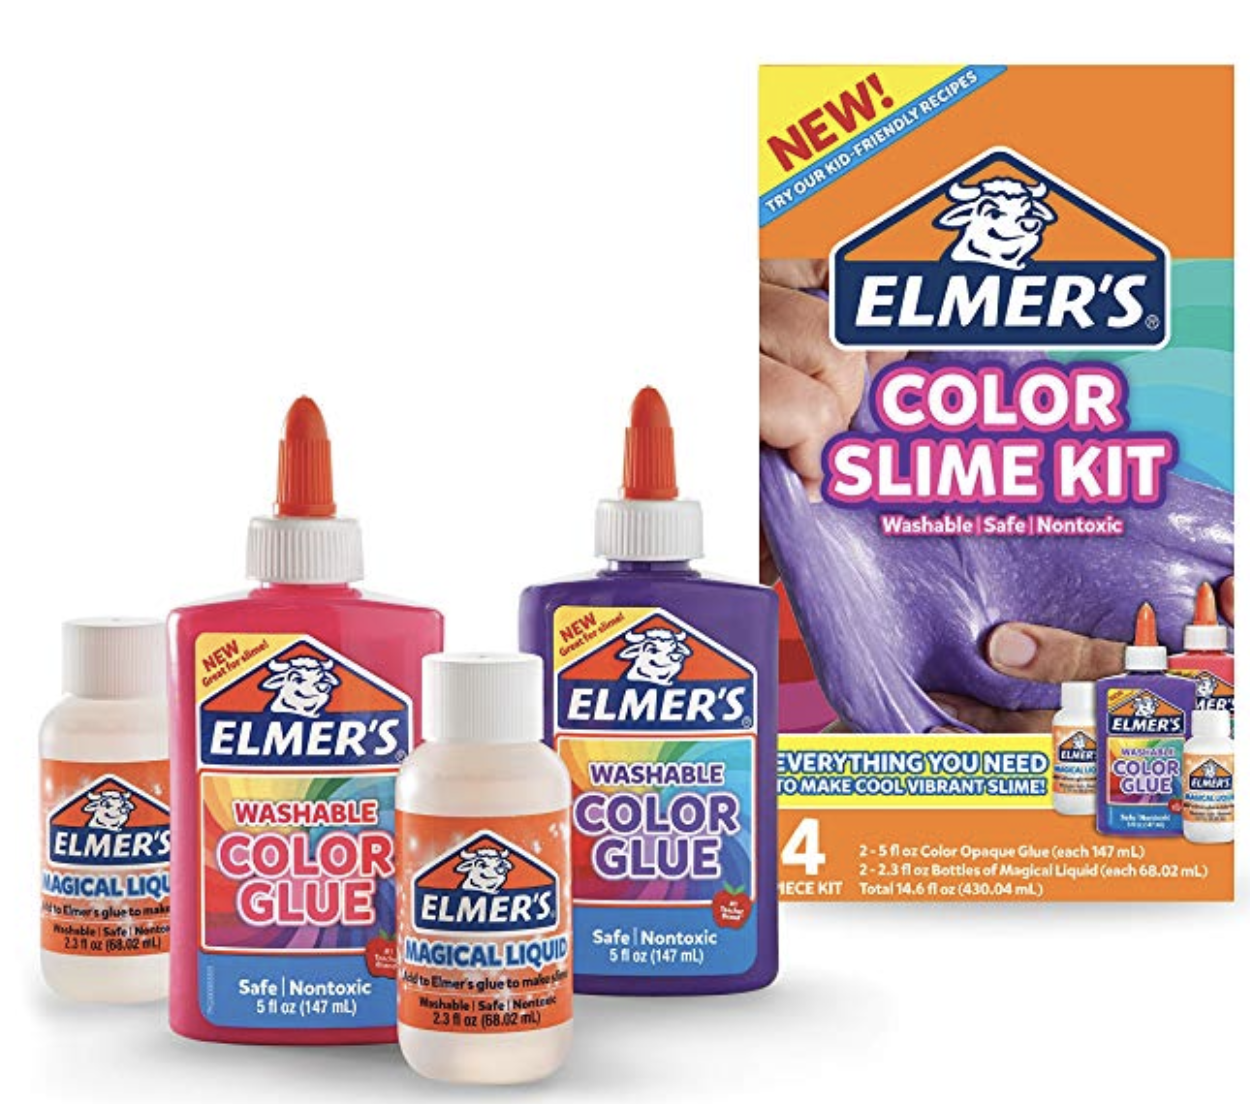 Elmers Glow In The Dark Slime Kit Just 799 Best Price